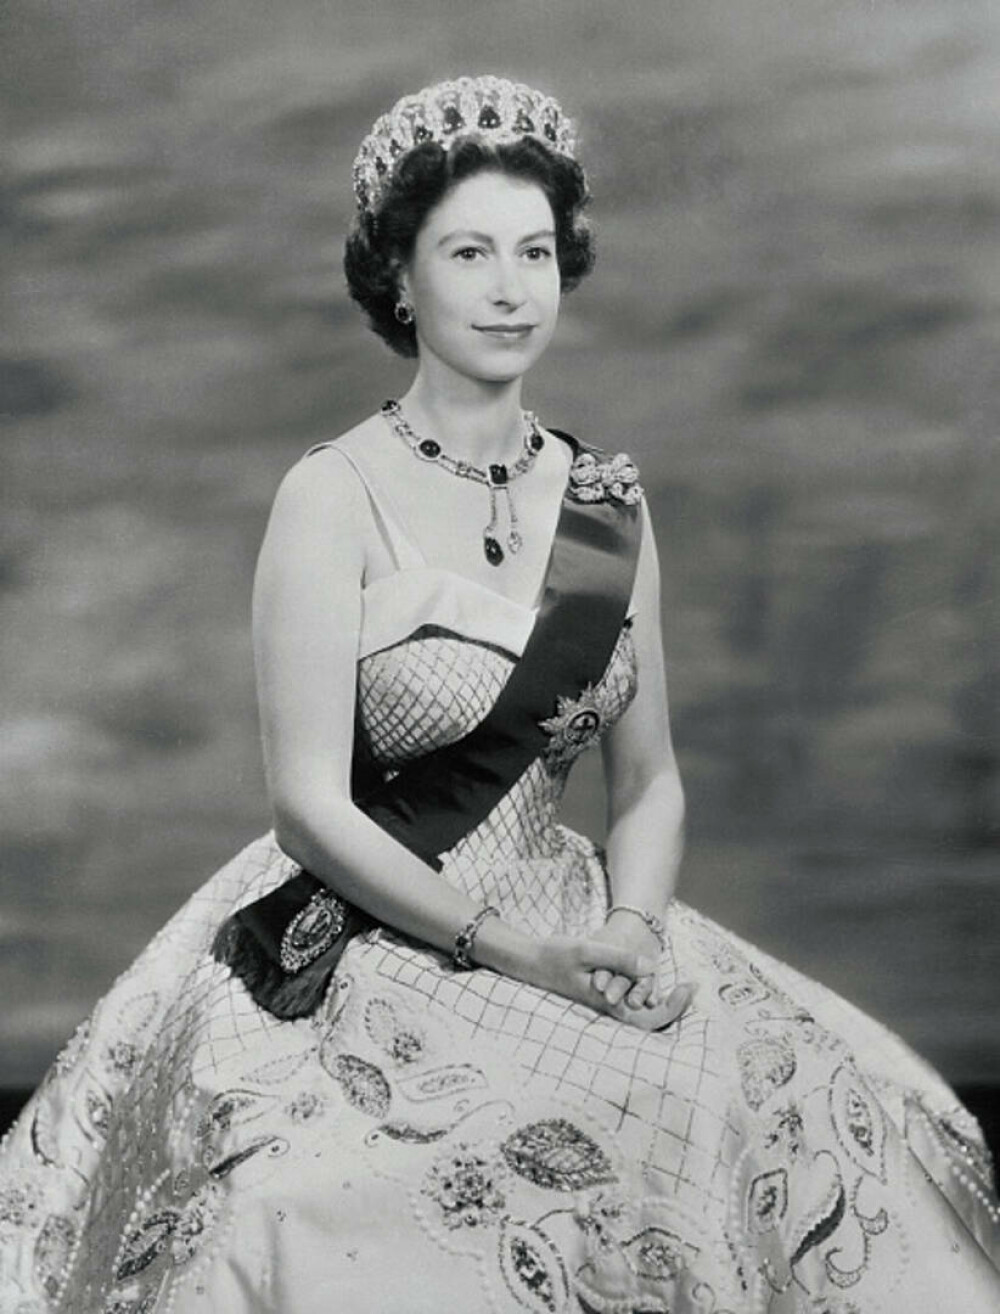 Viața Reginei Elisabeta în imagini. În cei peste 70 de ani de domnie, a devenit al doilea cel mai longeviv monarh din istorie - Imaginea 13